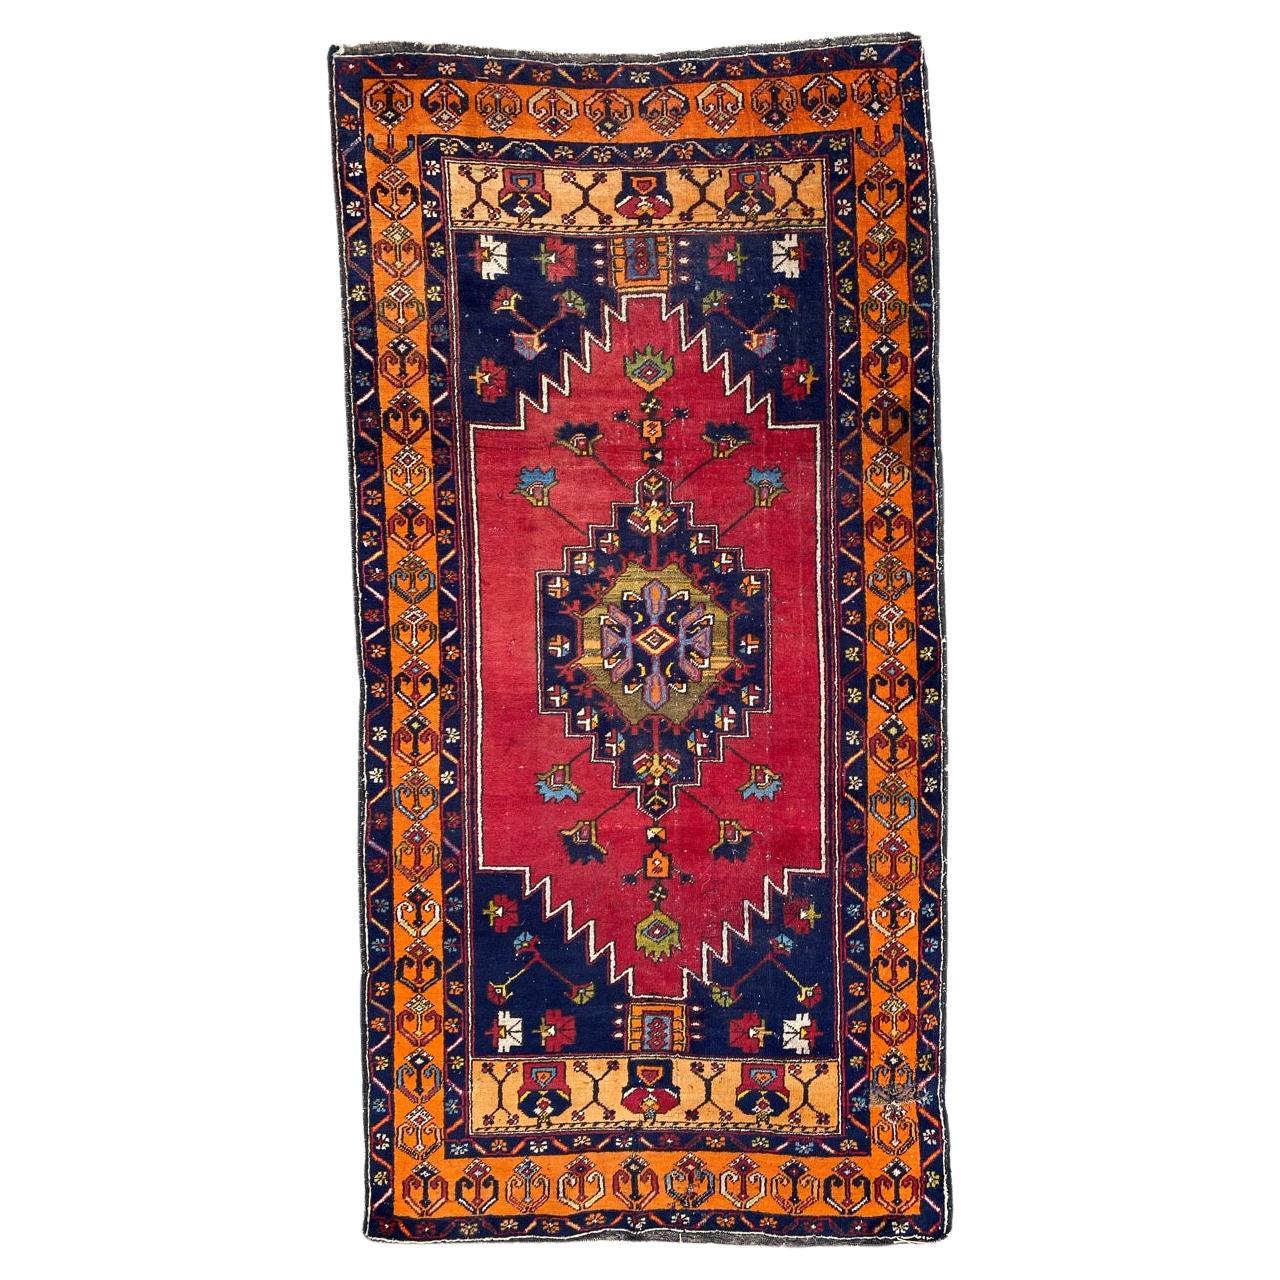 Le magnifique tapis turc vintage de Bobyrug